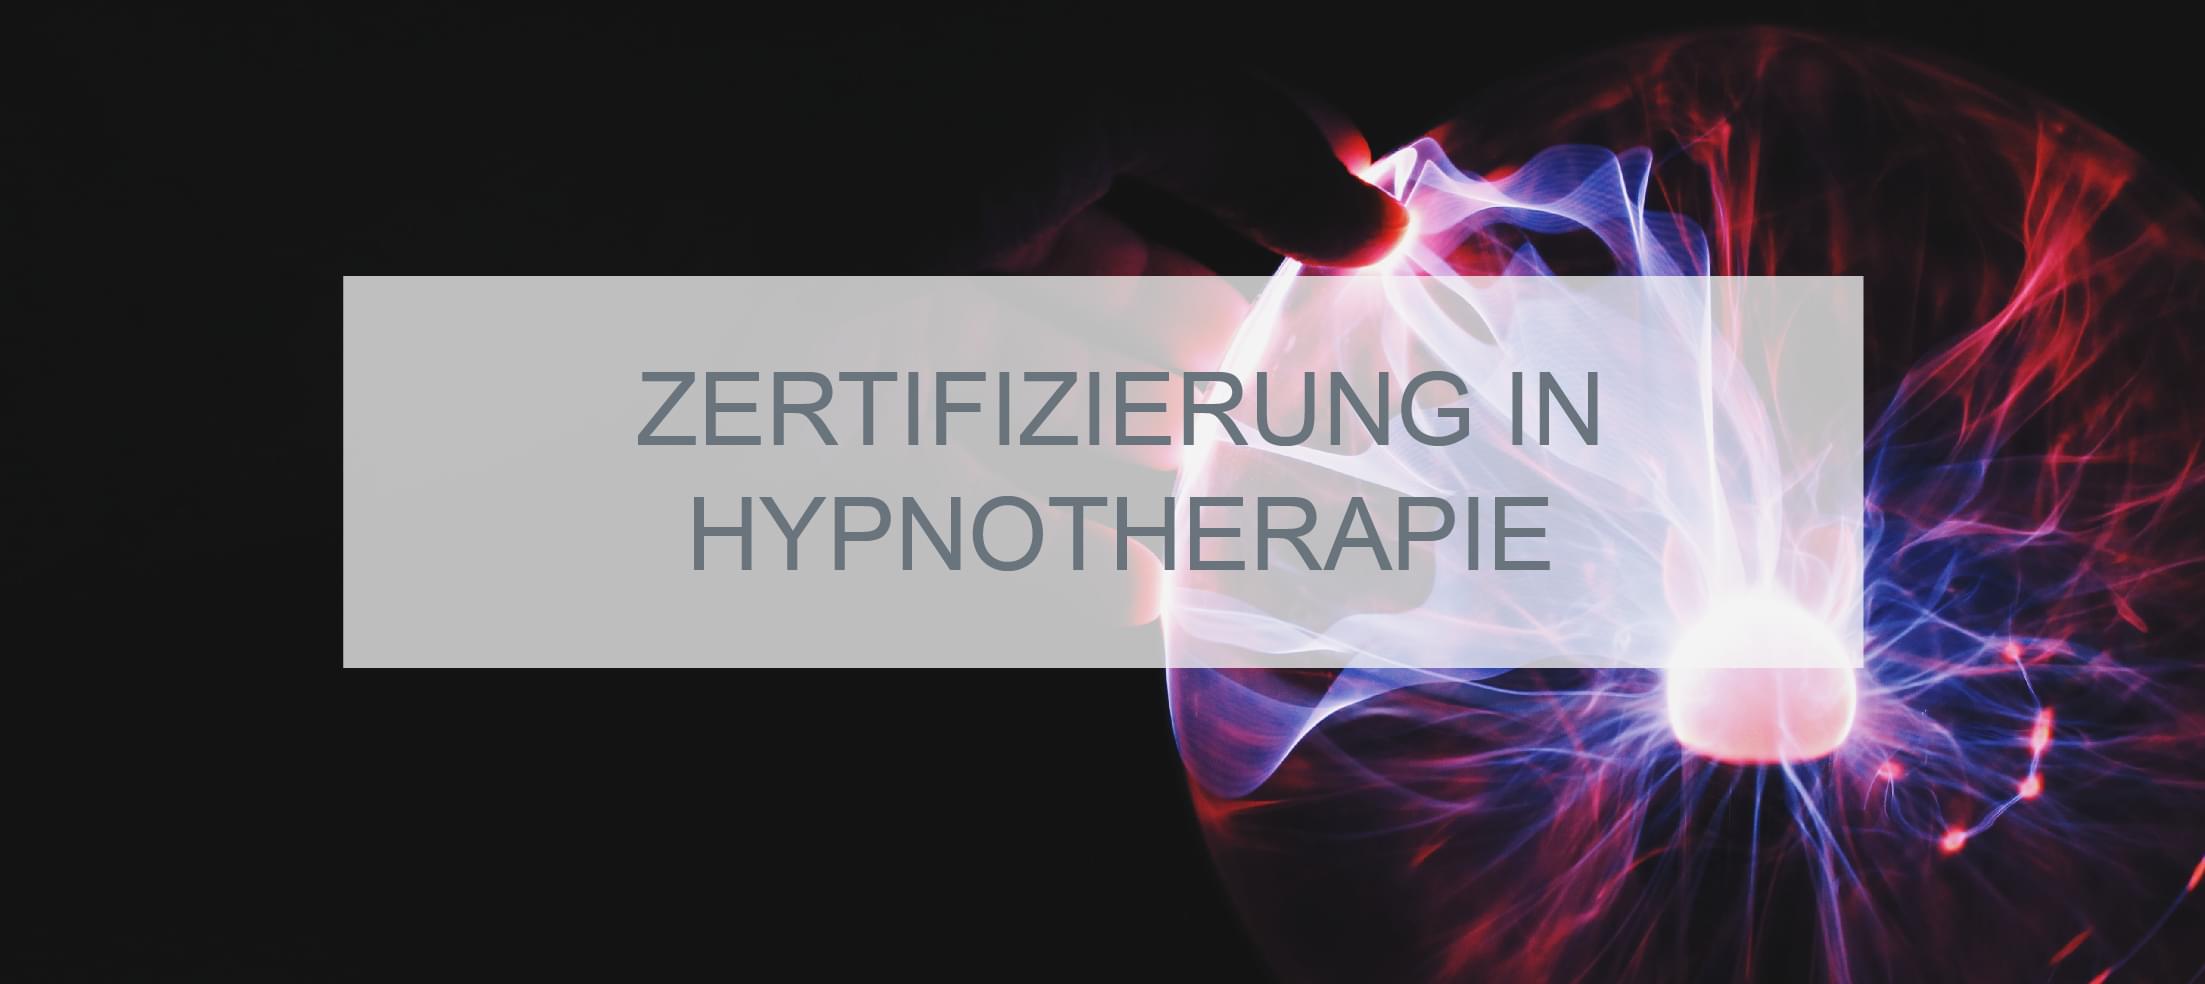 BANNER-Zertifizierung-in-Hypnotherapie-01